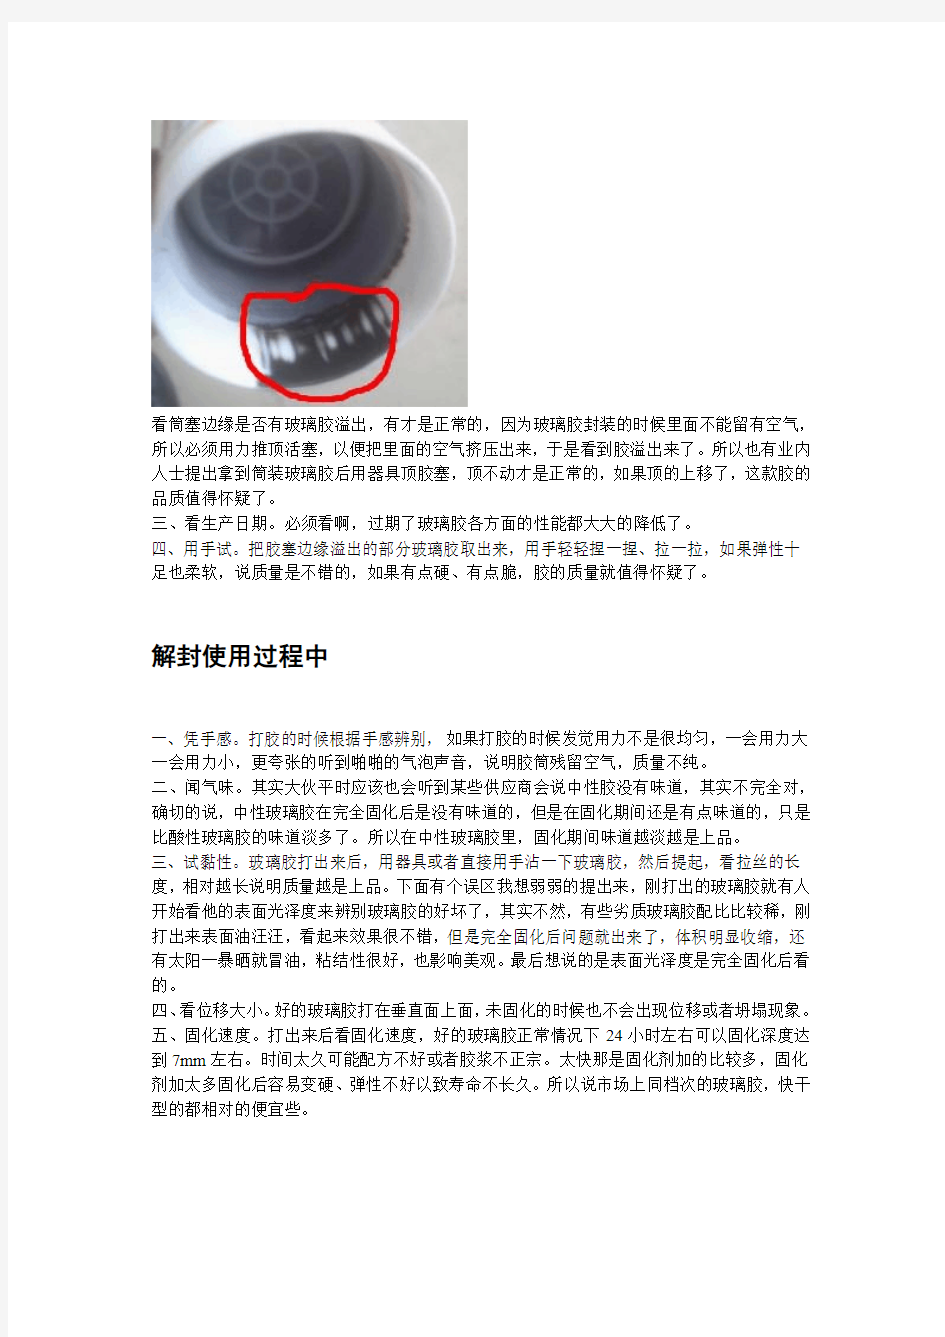 中国硅酮胶五大领军企业教你“如何辨别玻璃胶的好坏”